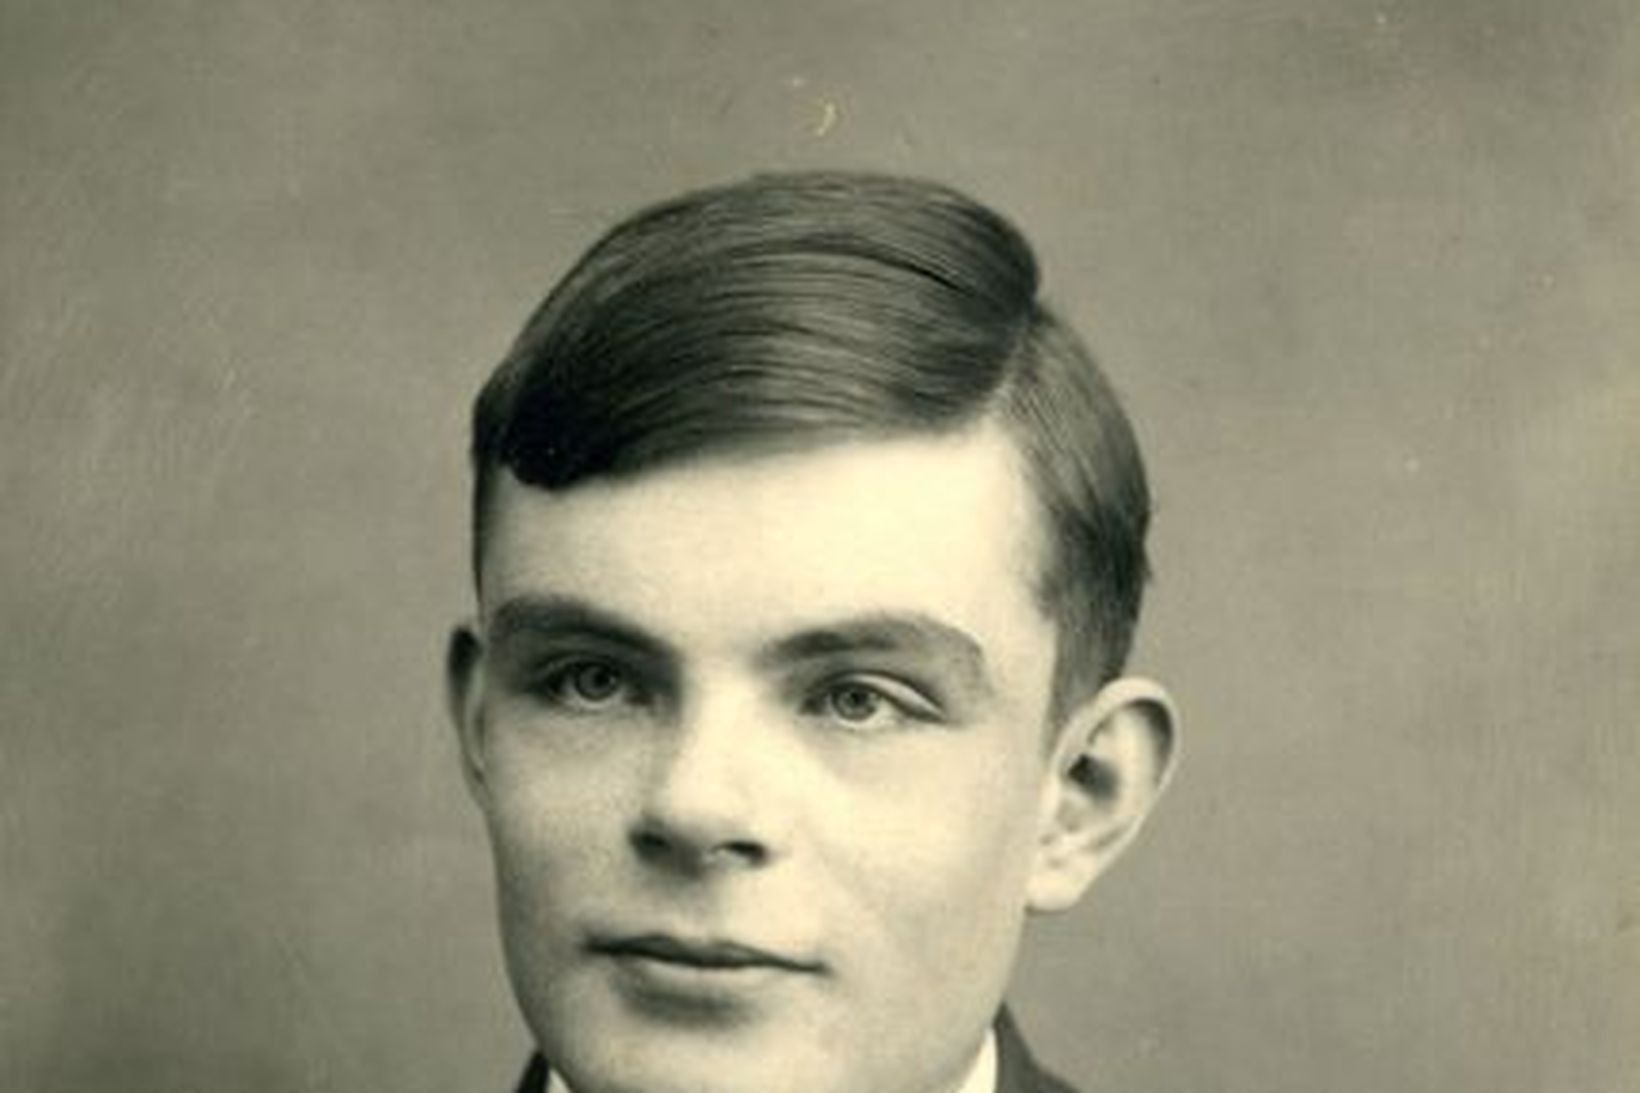 Breski stærðfræðingurinn Alan Turing var ofsóttur vegna samkynhneigðar sinnar. Hann …